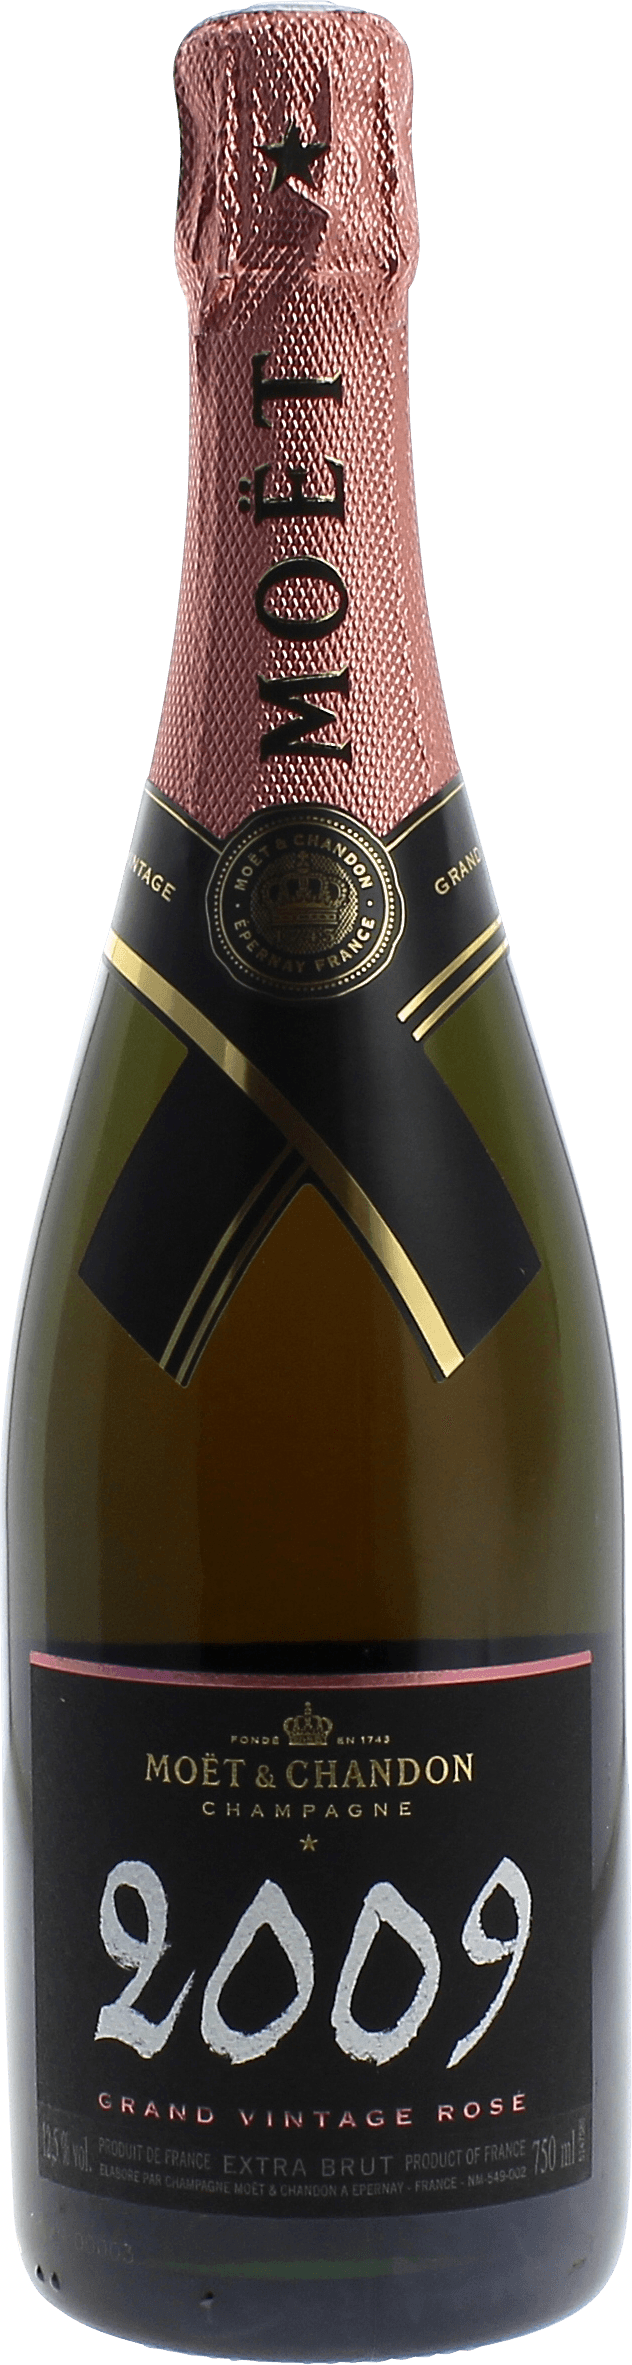 Mot et chandon grand vintage ros 2009  Moet et chandon, Champagne